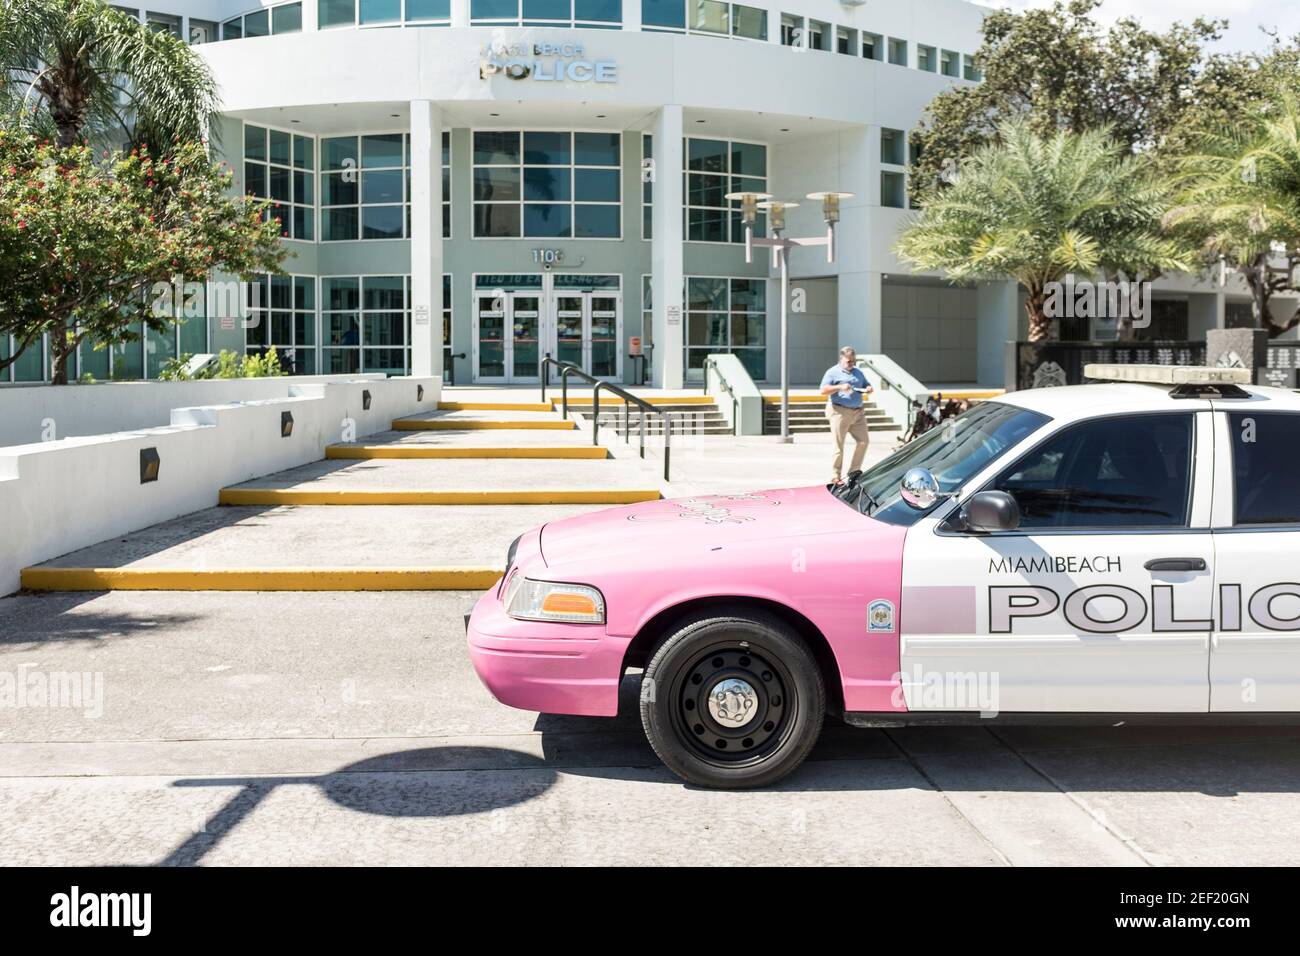 Un homme marche à côté d'une voiture de police désaffectée de Miami Beach peinte en rose à l'extérieur du service de police de Miami Beach. Banque D'Images